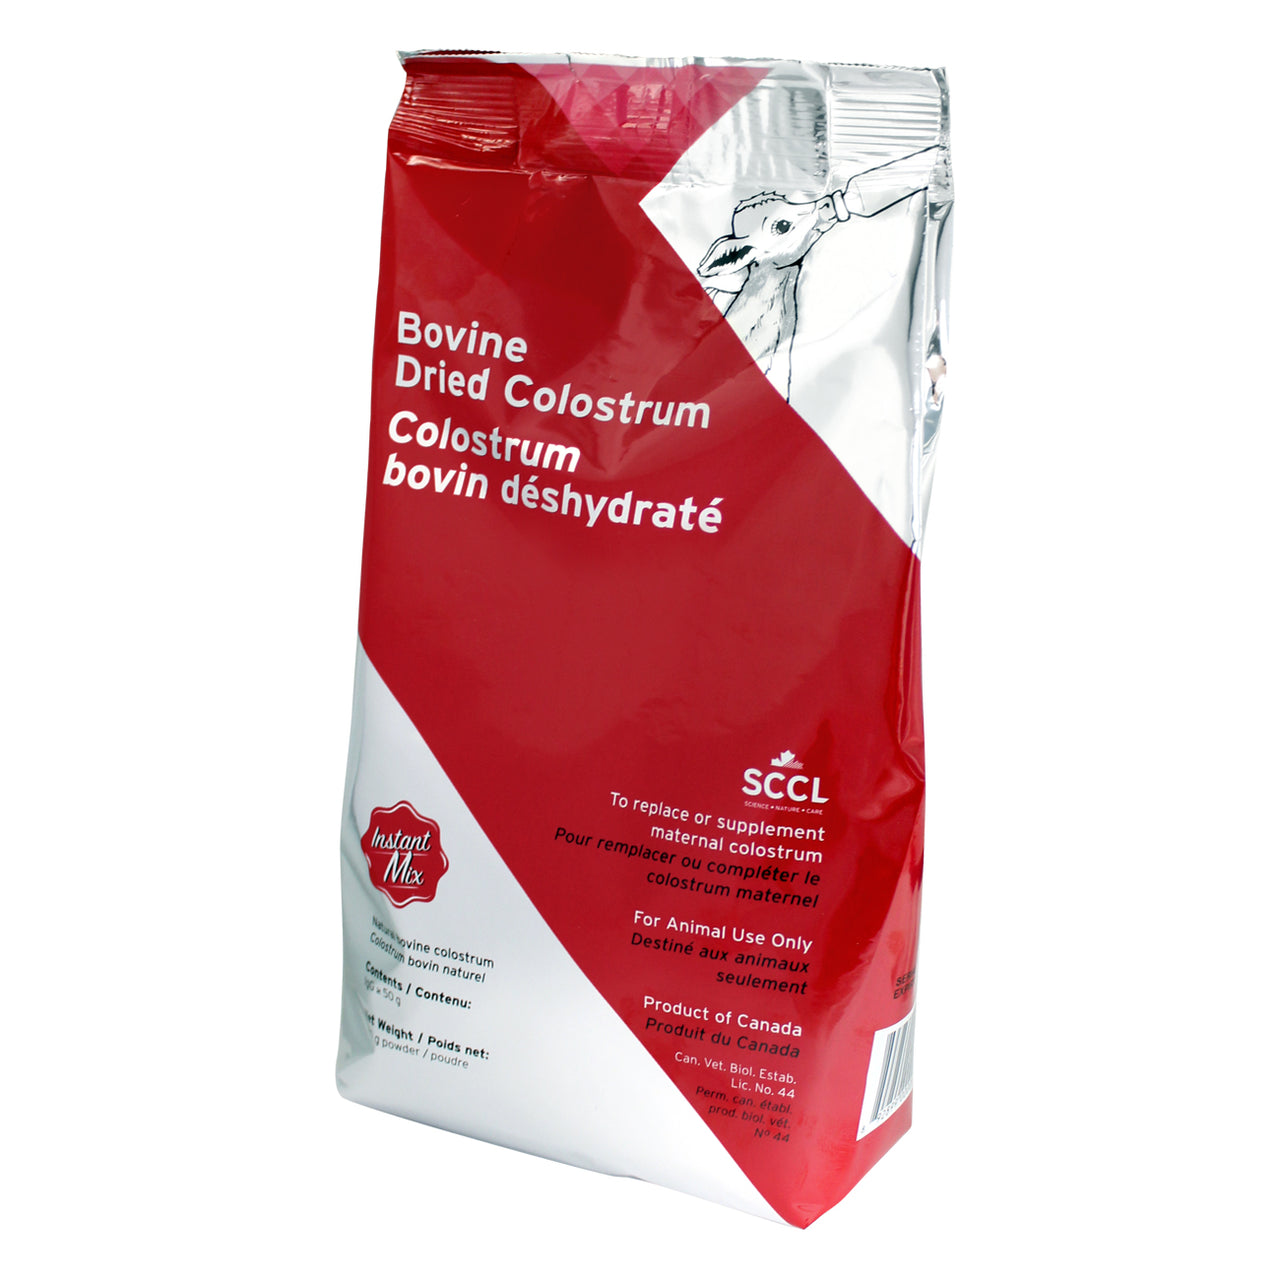 SCC Bovine Dried Colostrum instant mix 350g